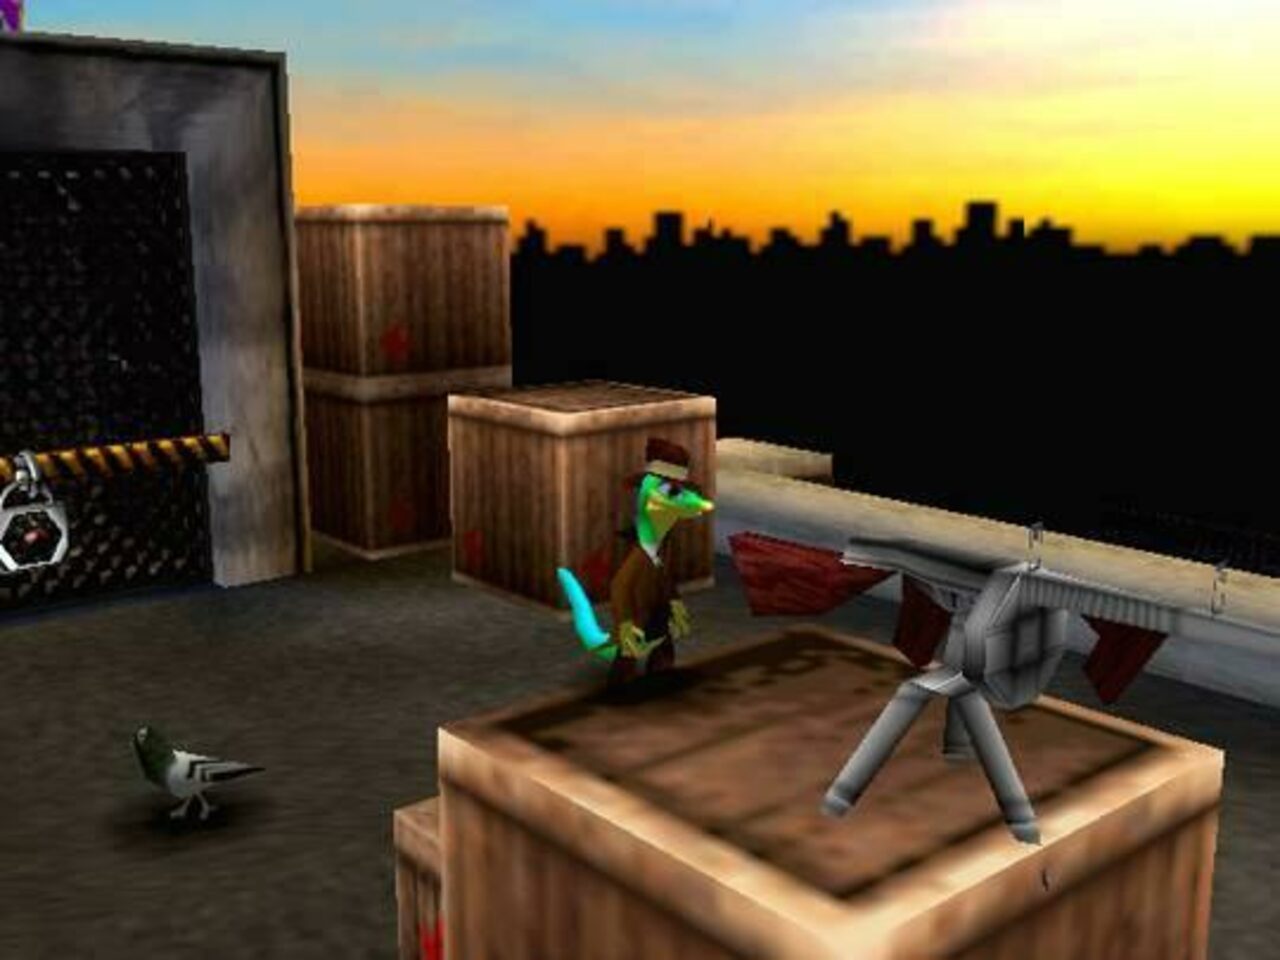 Gex 3: Deep Cover Gecko (1999) Nintendo 64